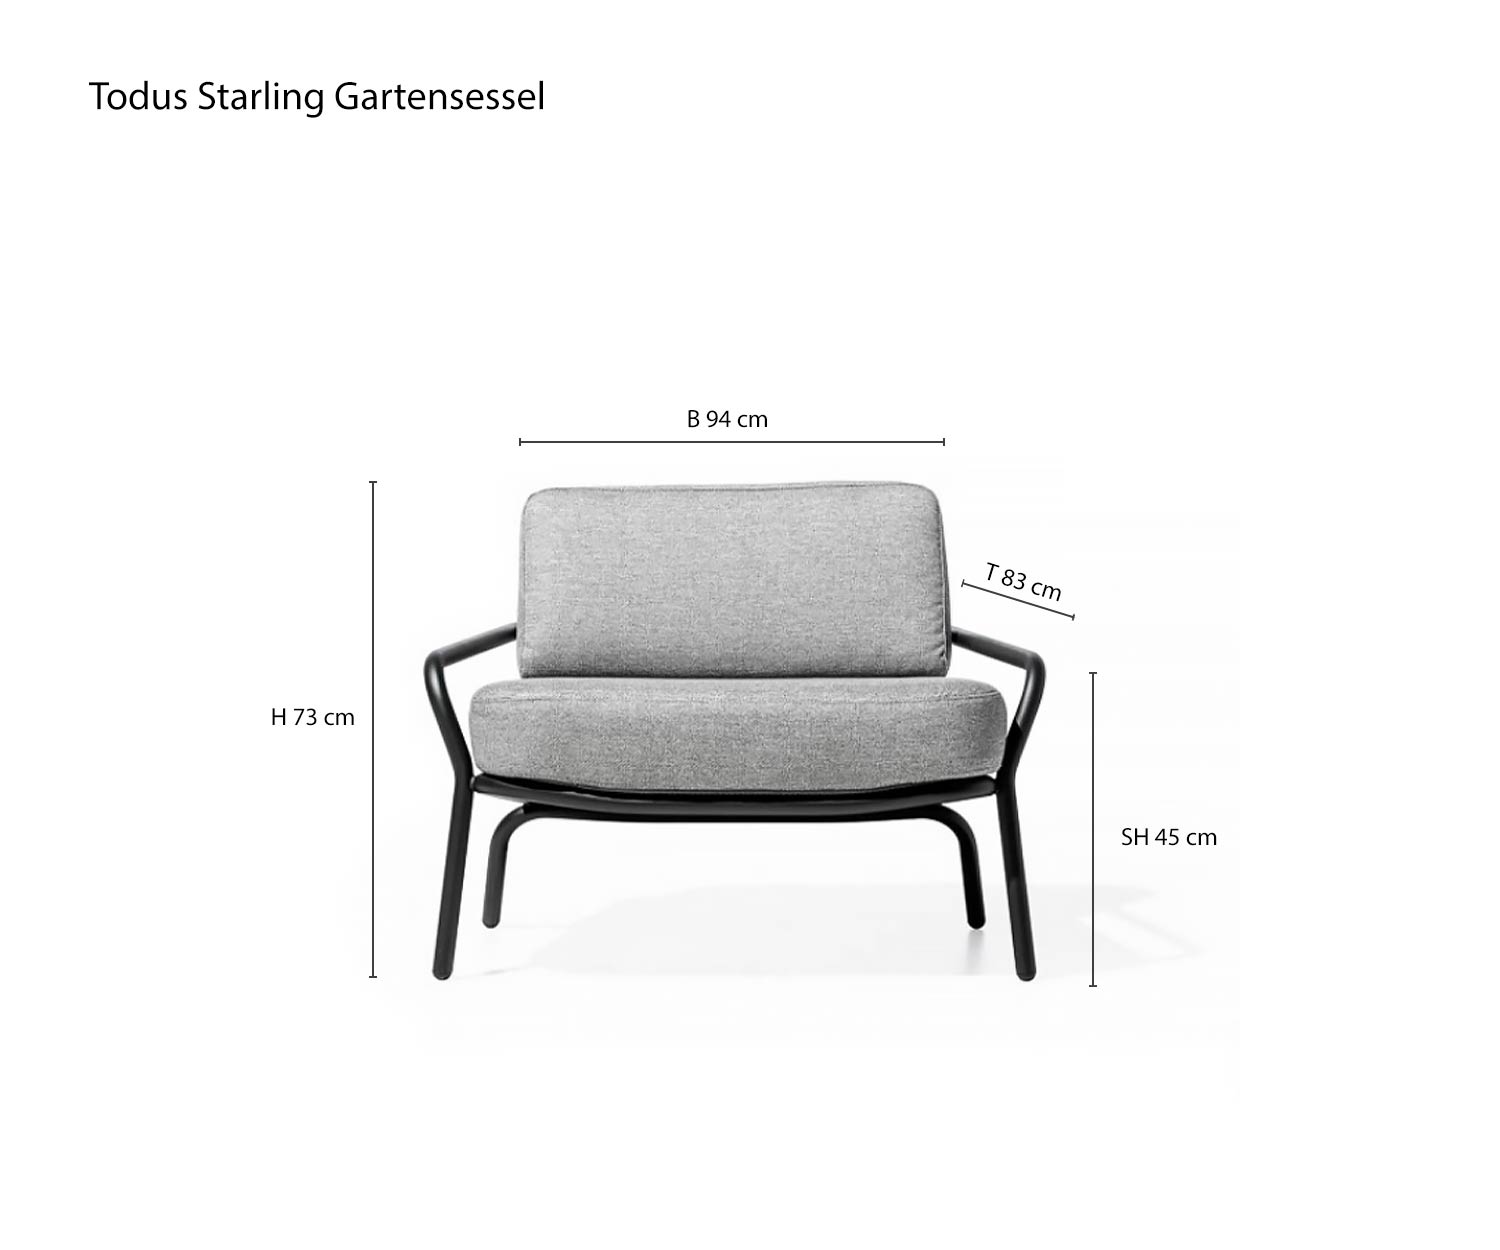 Starling designer garden armchair sketch dimensions sizes